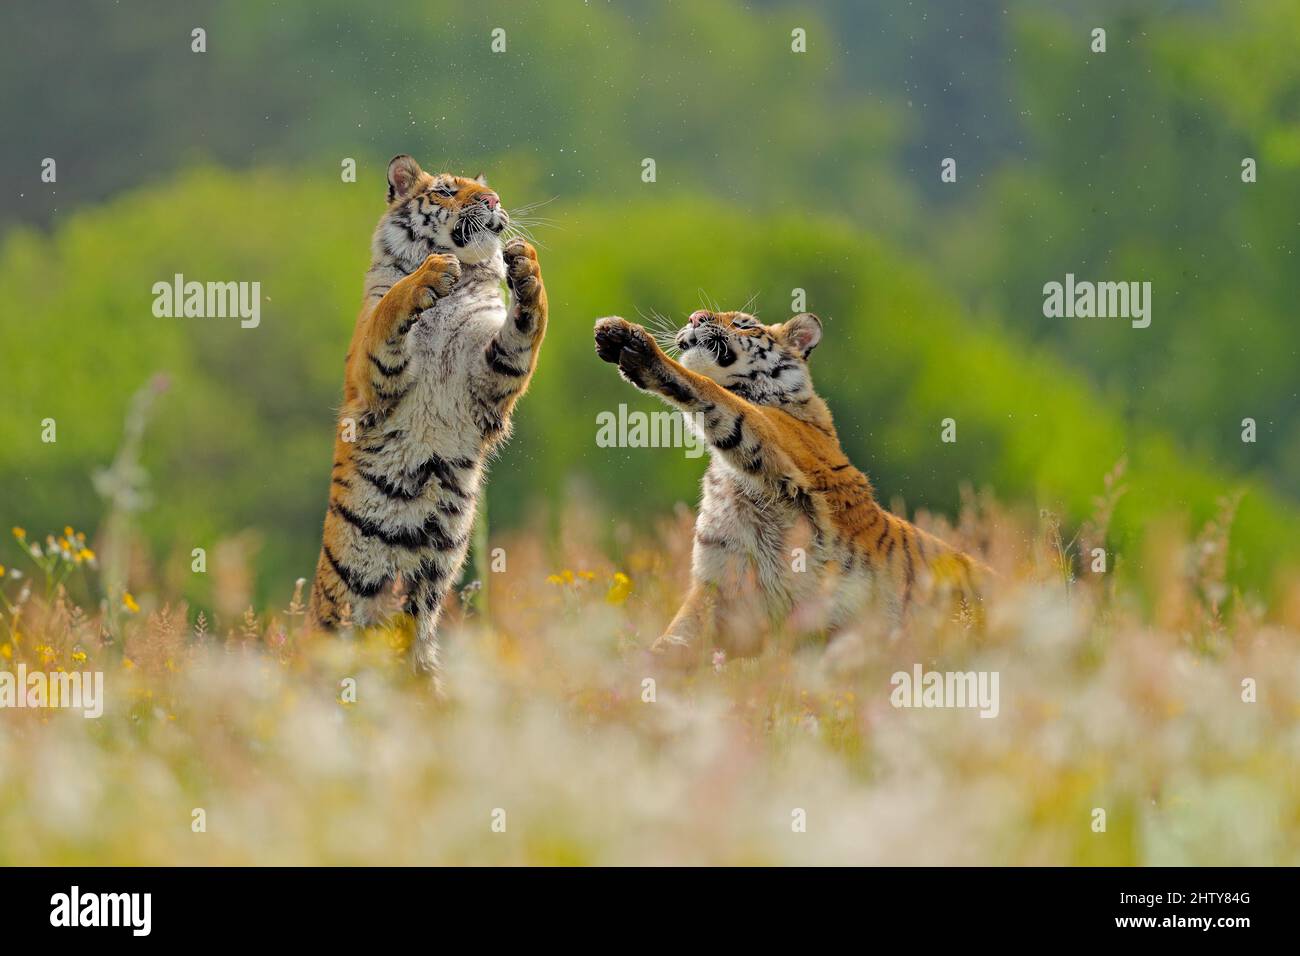 Tiger kämpfen im grünen weißen Baumwollgras. Gefährliches Tier, Taiga,  Russland. Große Katze sitzt in der Umgebung. Zwei wilde Katzen spielen in  der Natur der Tierwelt. Siberi Stockfotografie - Alamy